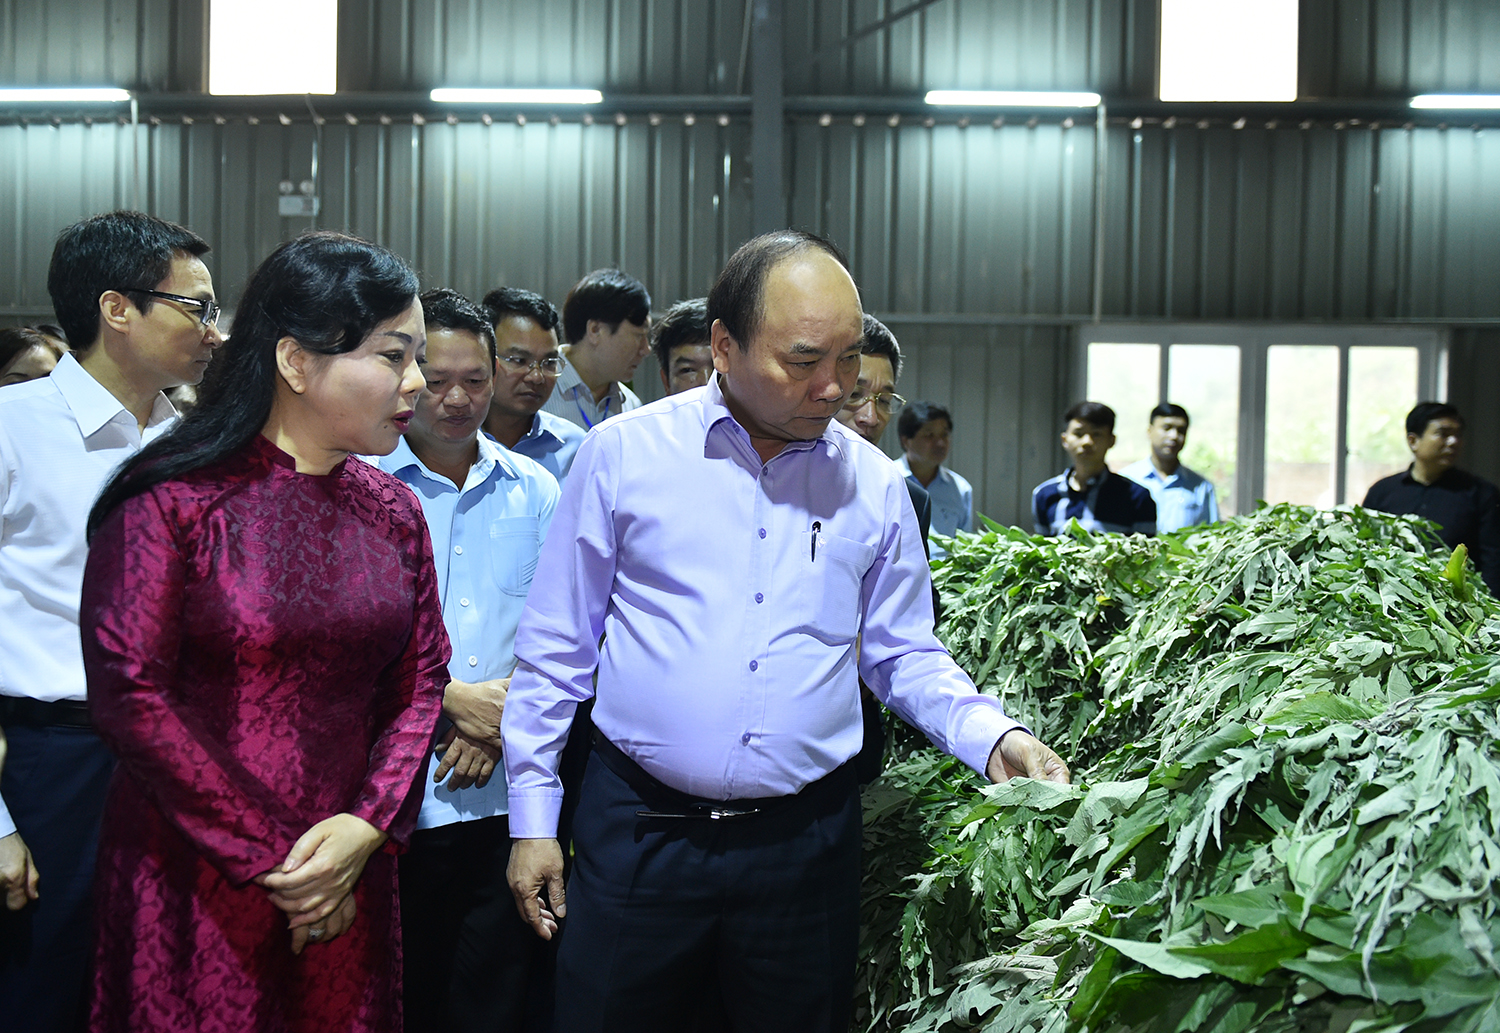 Trước khi tham dự hội nghị, Thủ tướng đã đến thăm dây chuyền sản xuất cao atiso của Công ty Traphaco Sapa tại tỉnh Lào Cai. Ảnh: VGP/Quang Hiếu